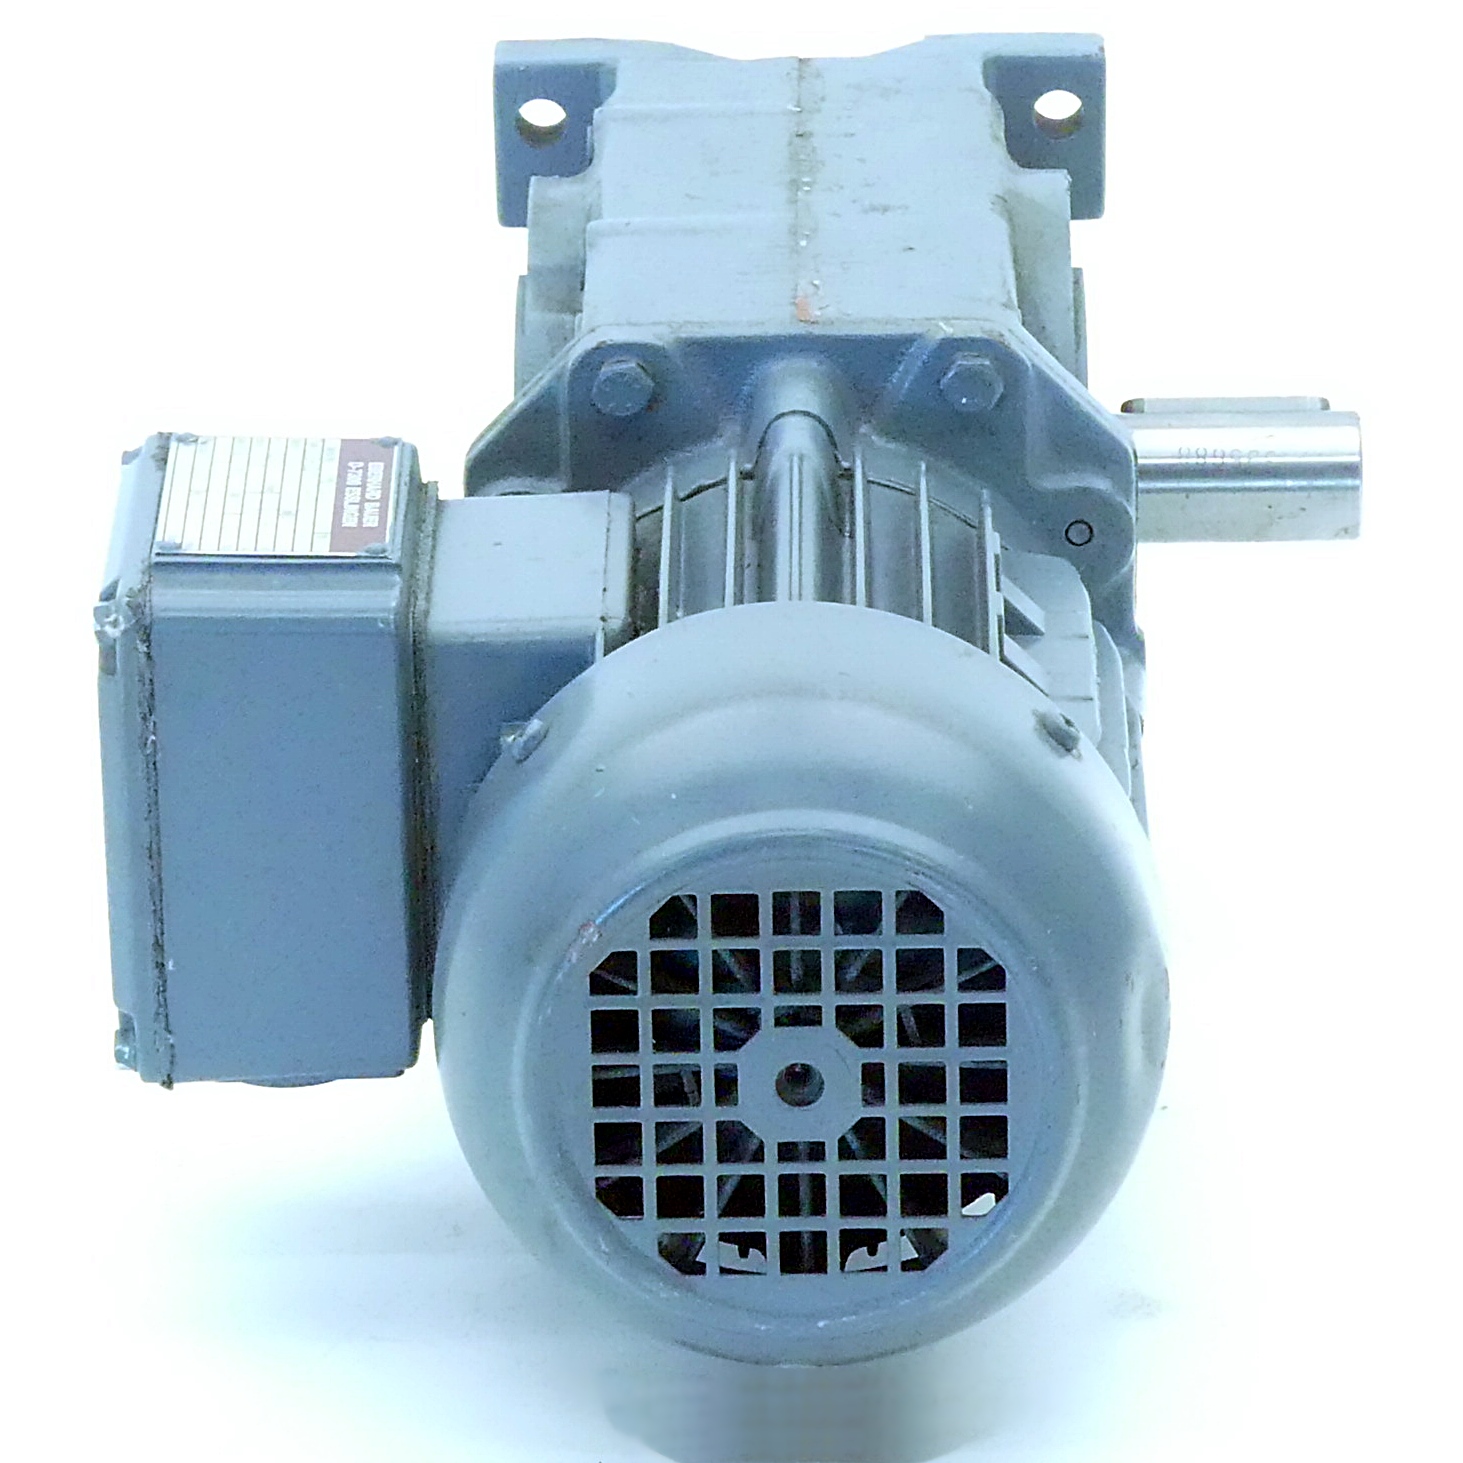 Getriebemotor SG2-22/DK 64-163 L 